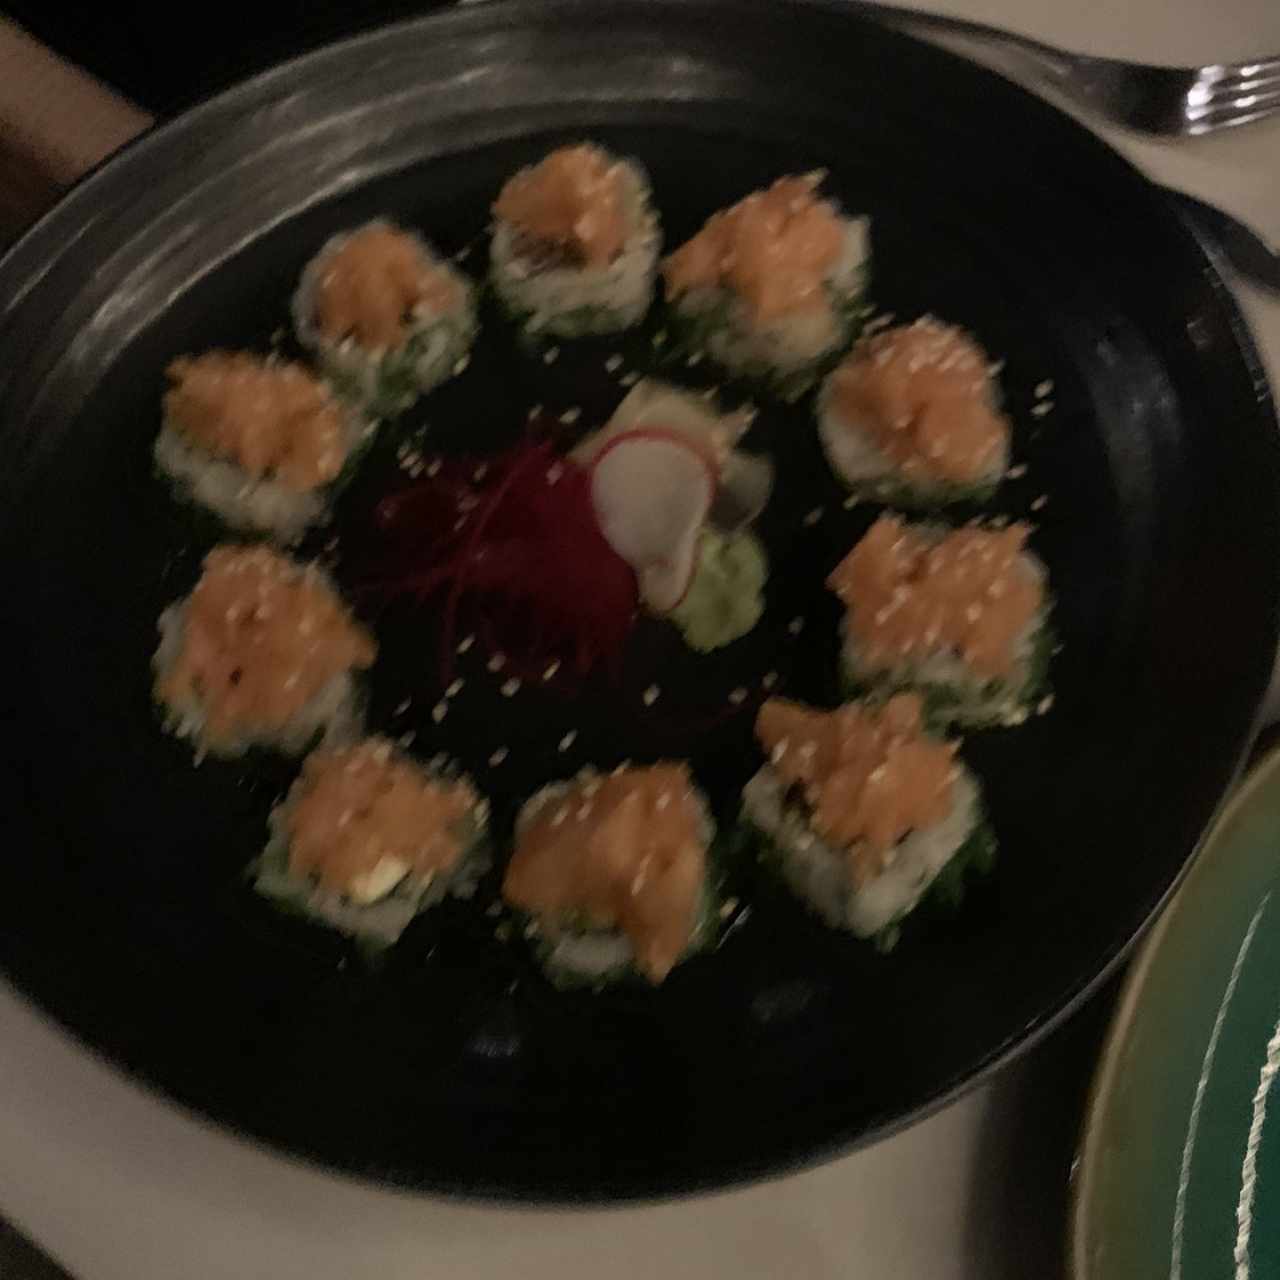 Sushi Bar - Ika Roll